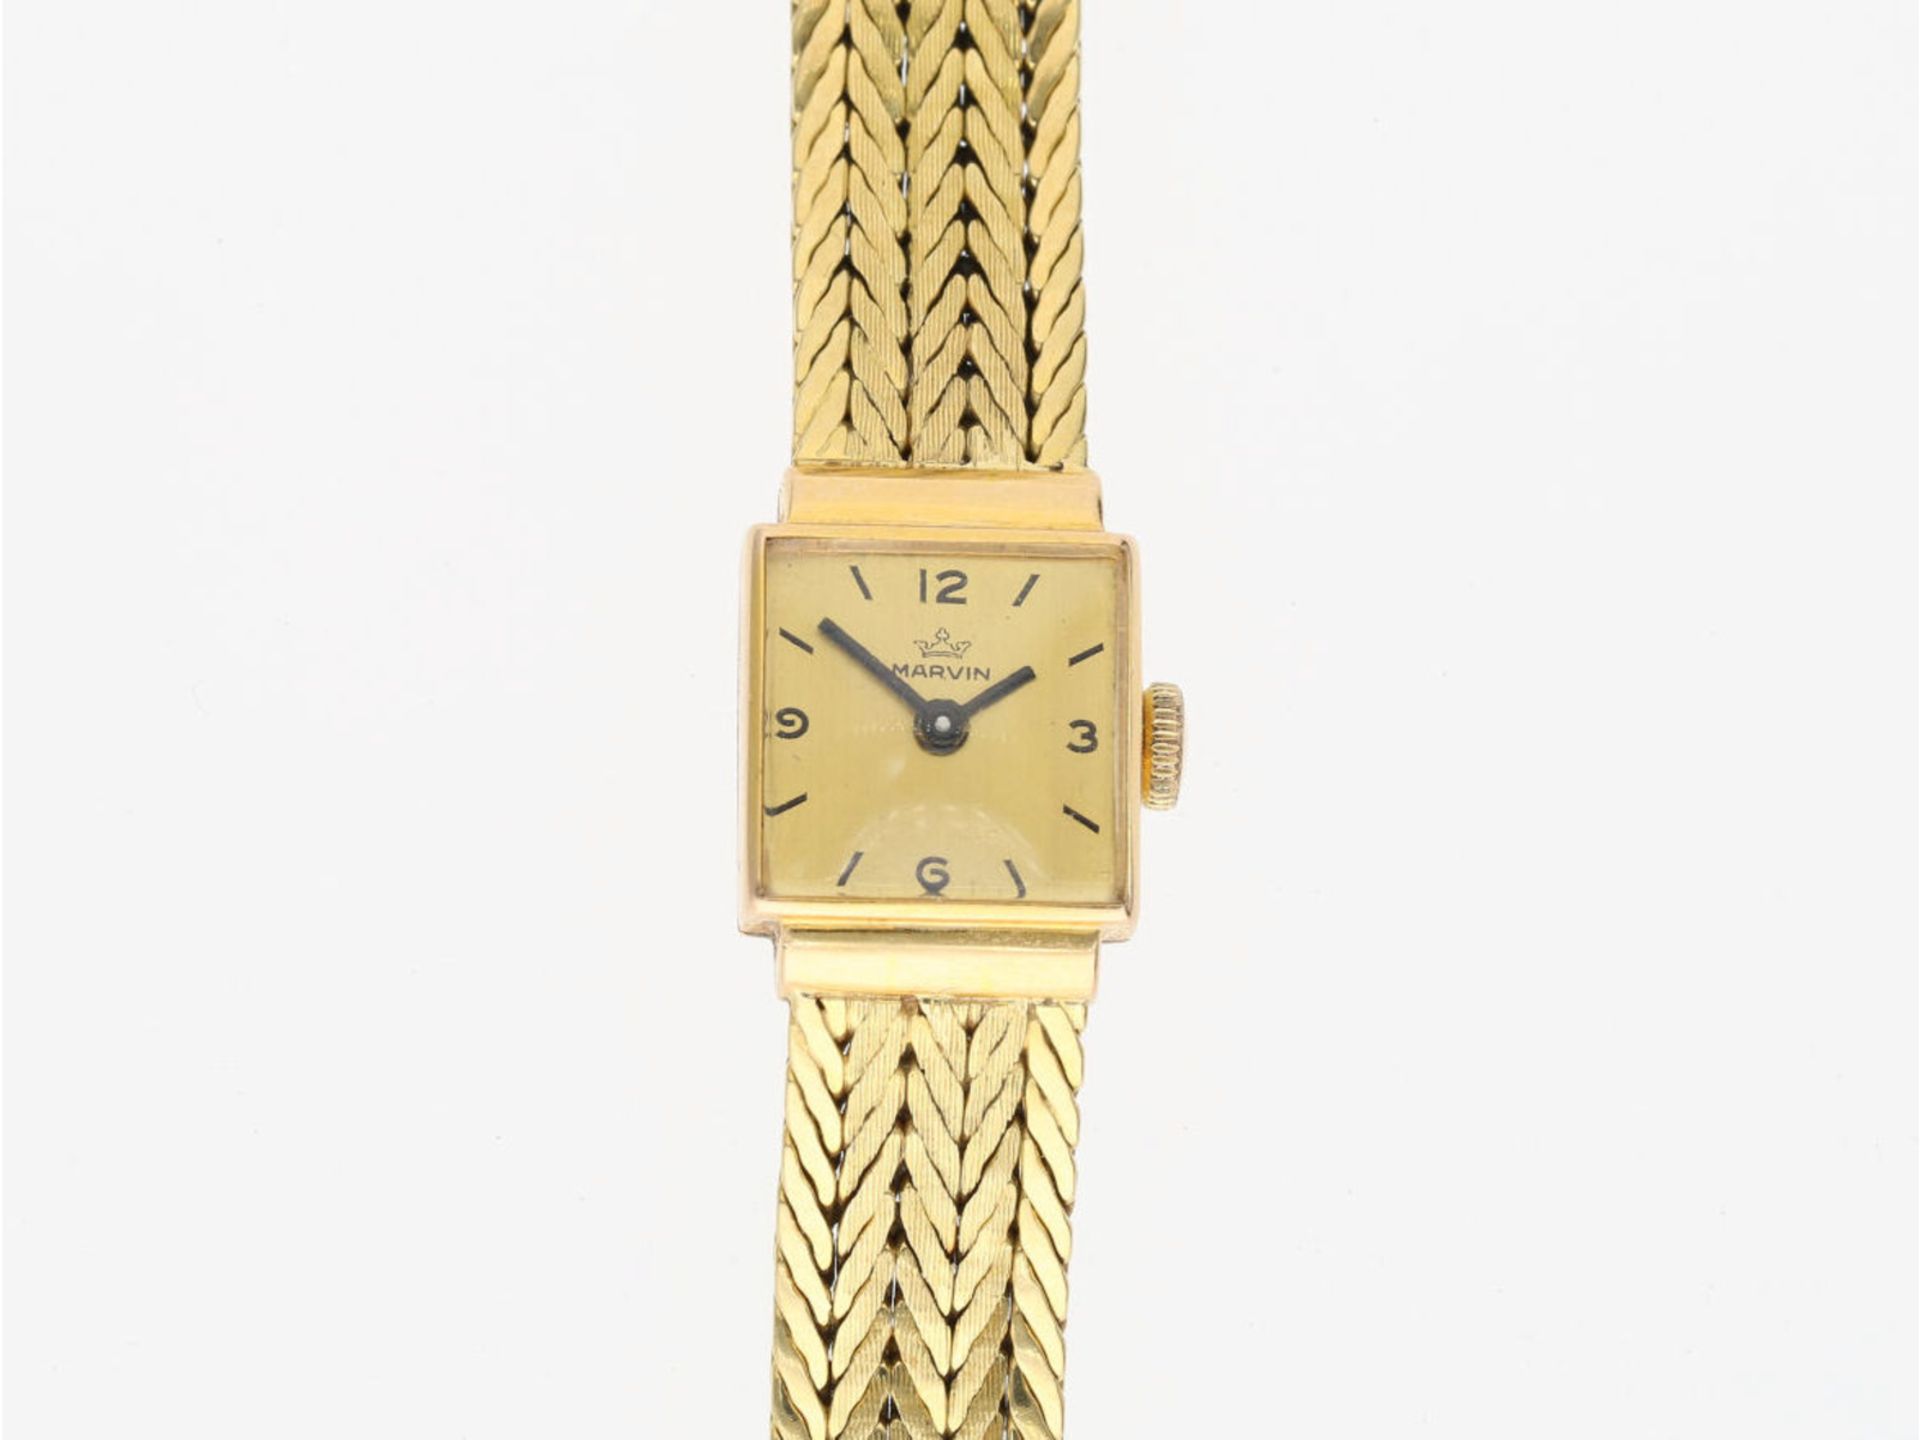 Armbanduhr: vintage Damenuhr aus 18K Gelbgold, Zifferblatt signiert "Marvin" - Bild 2 aus 4